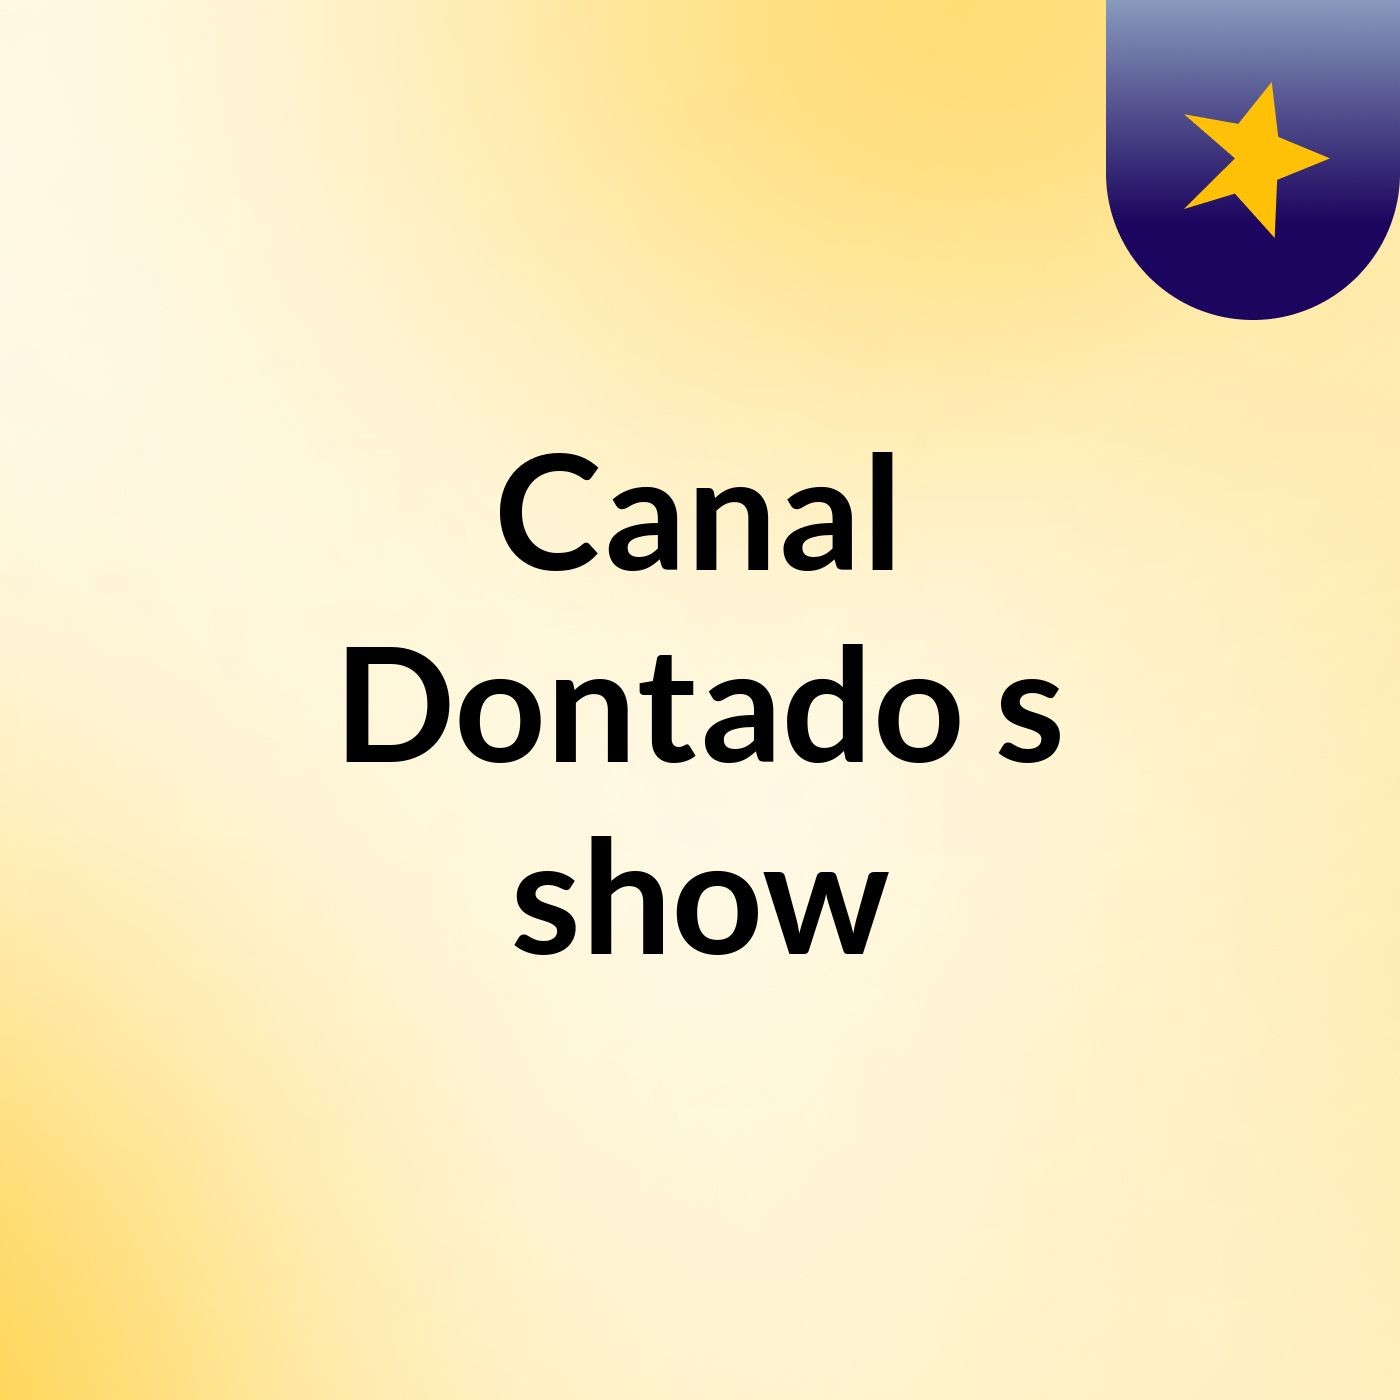 Canal Dontado's show